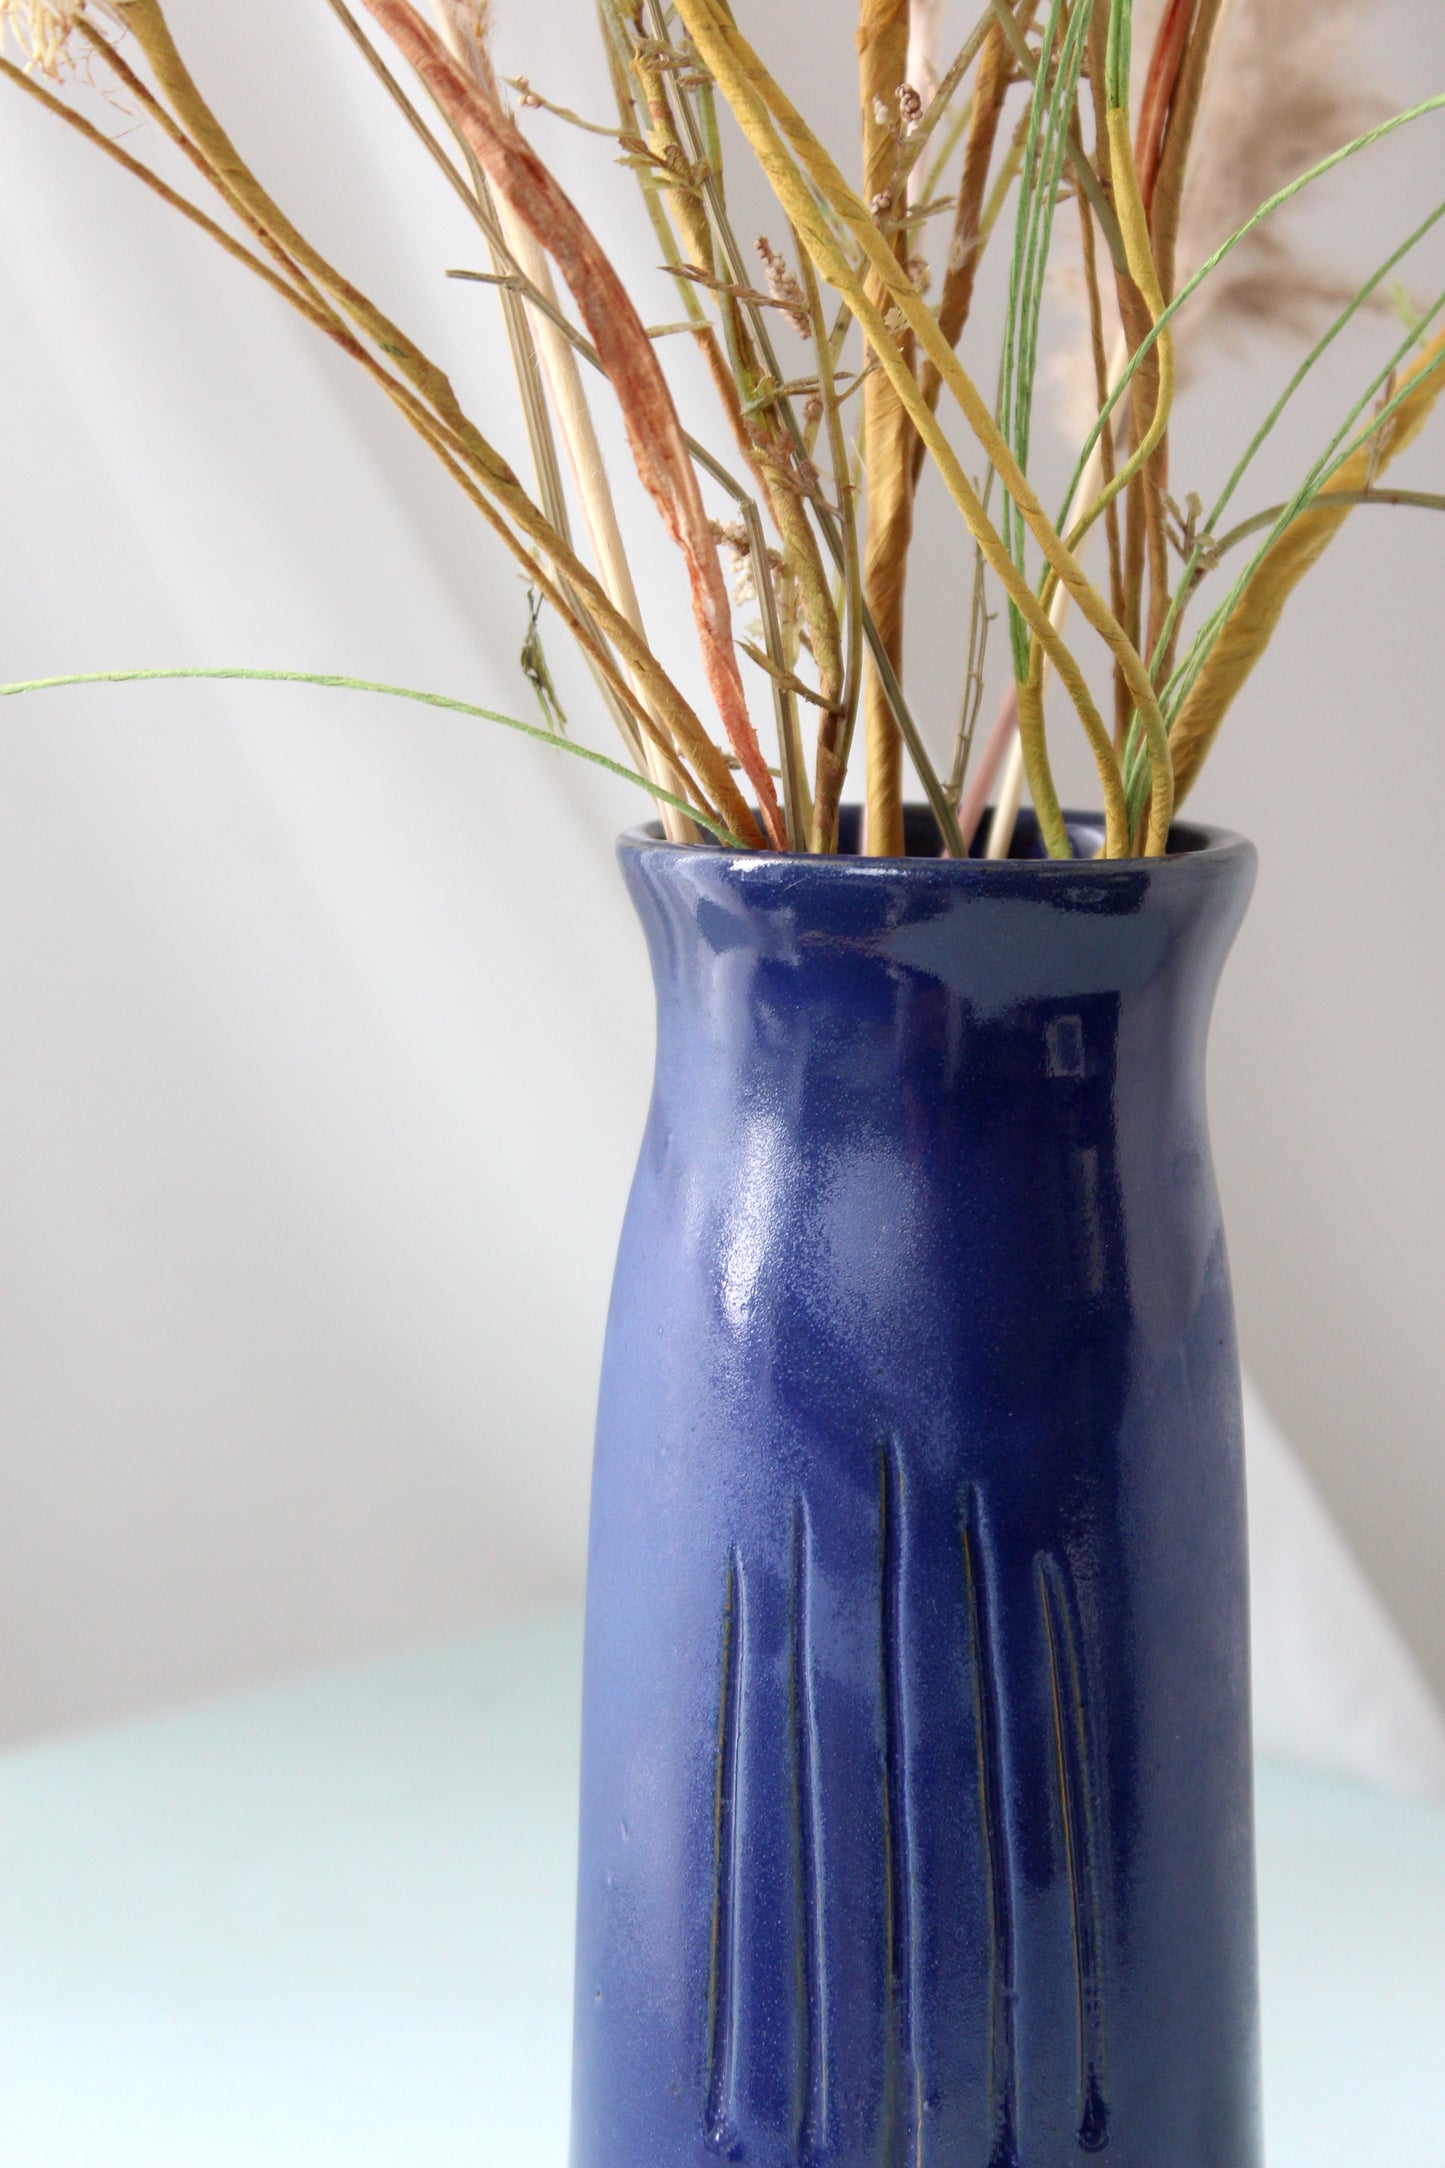 MG Keramik - Vase, blue